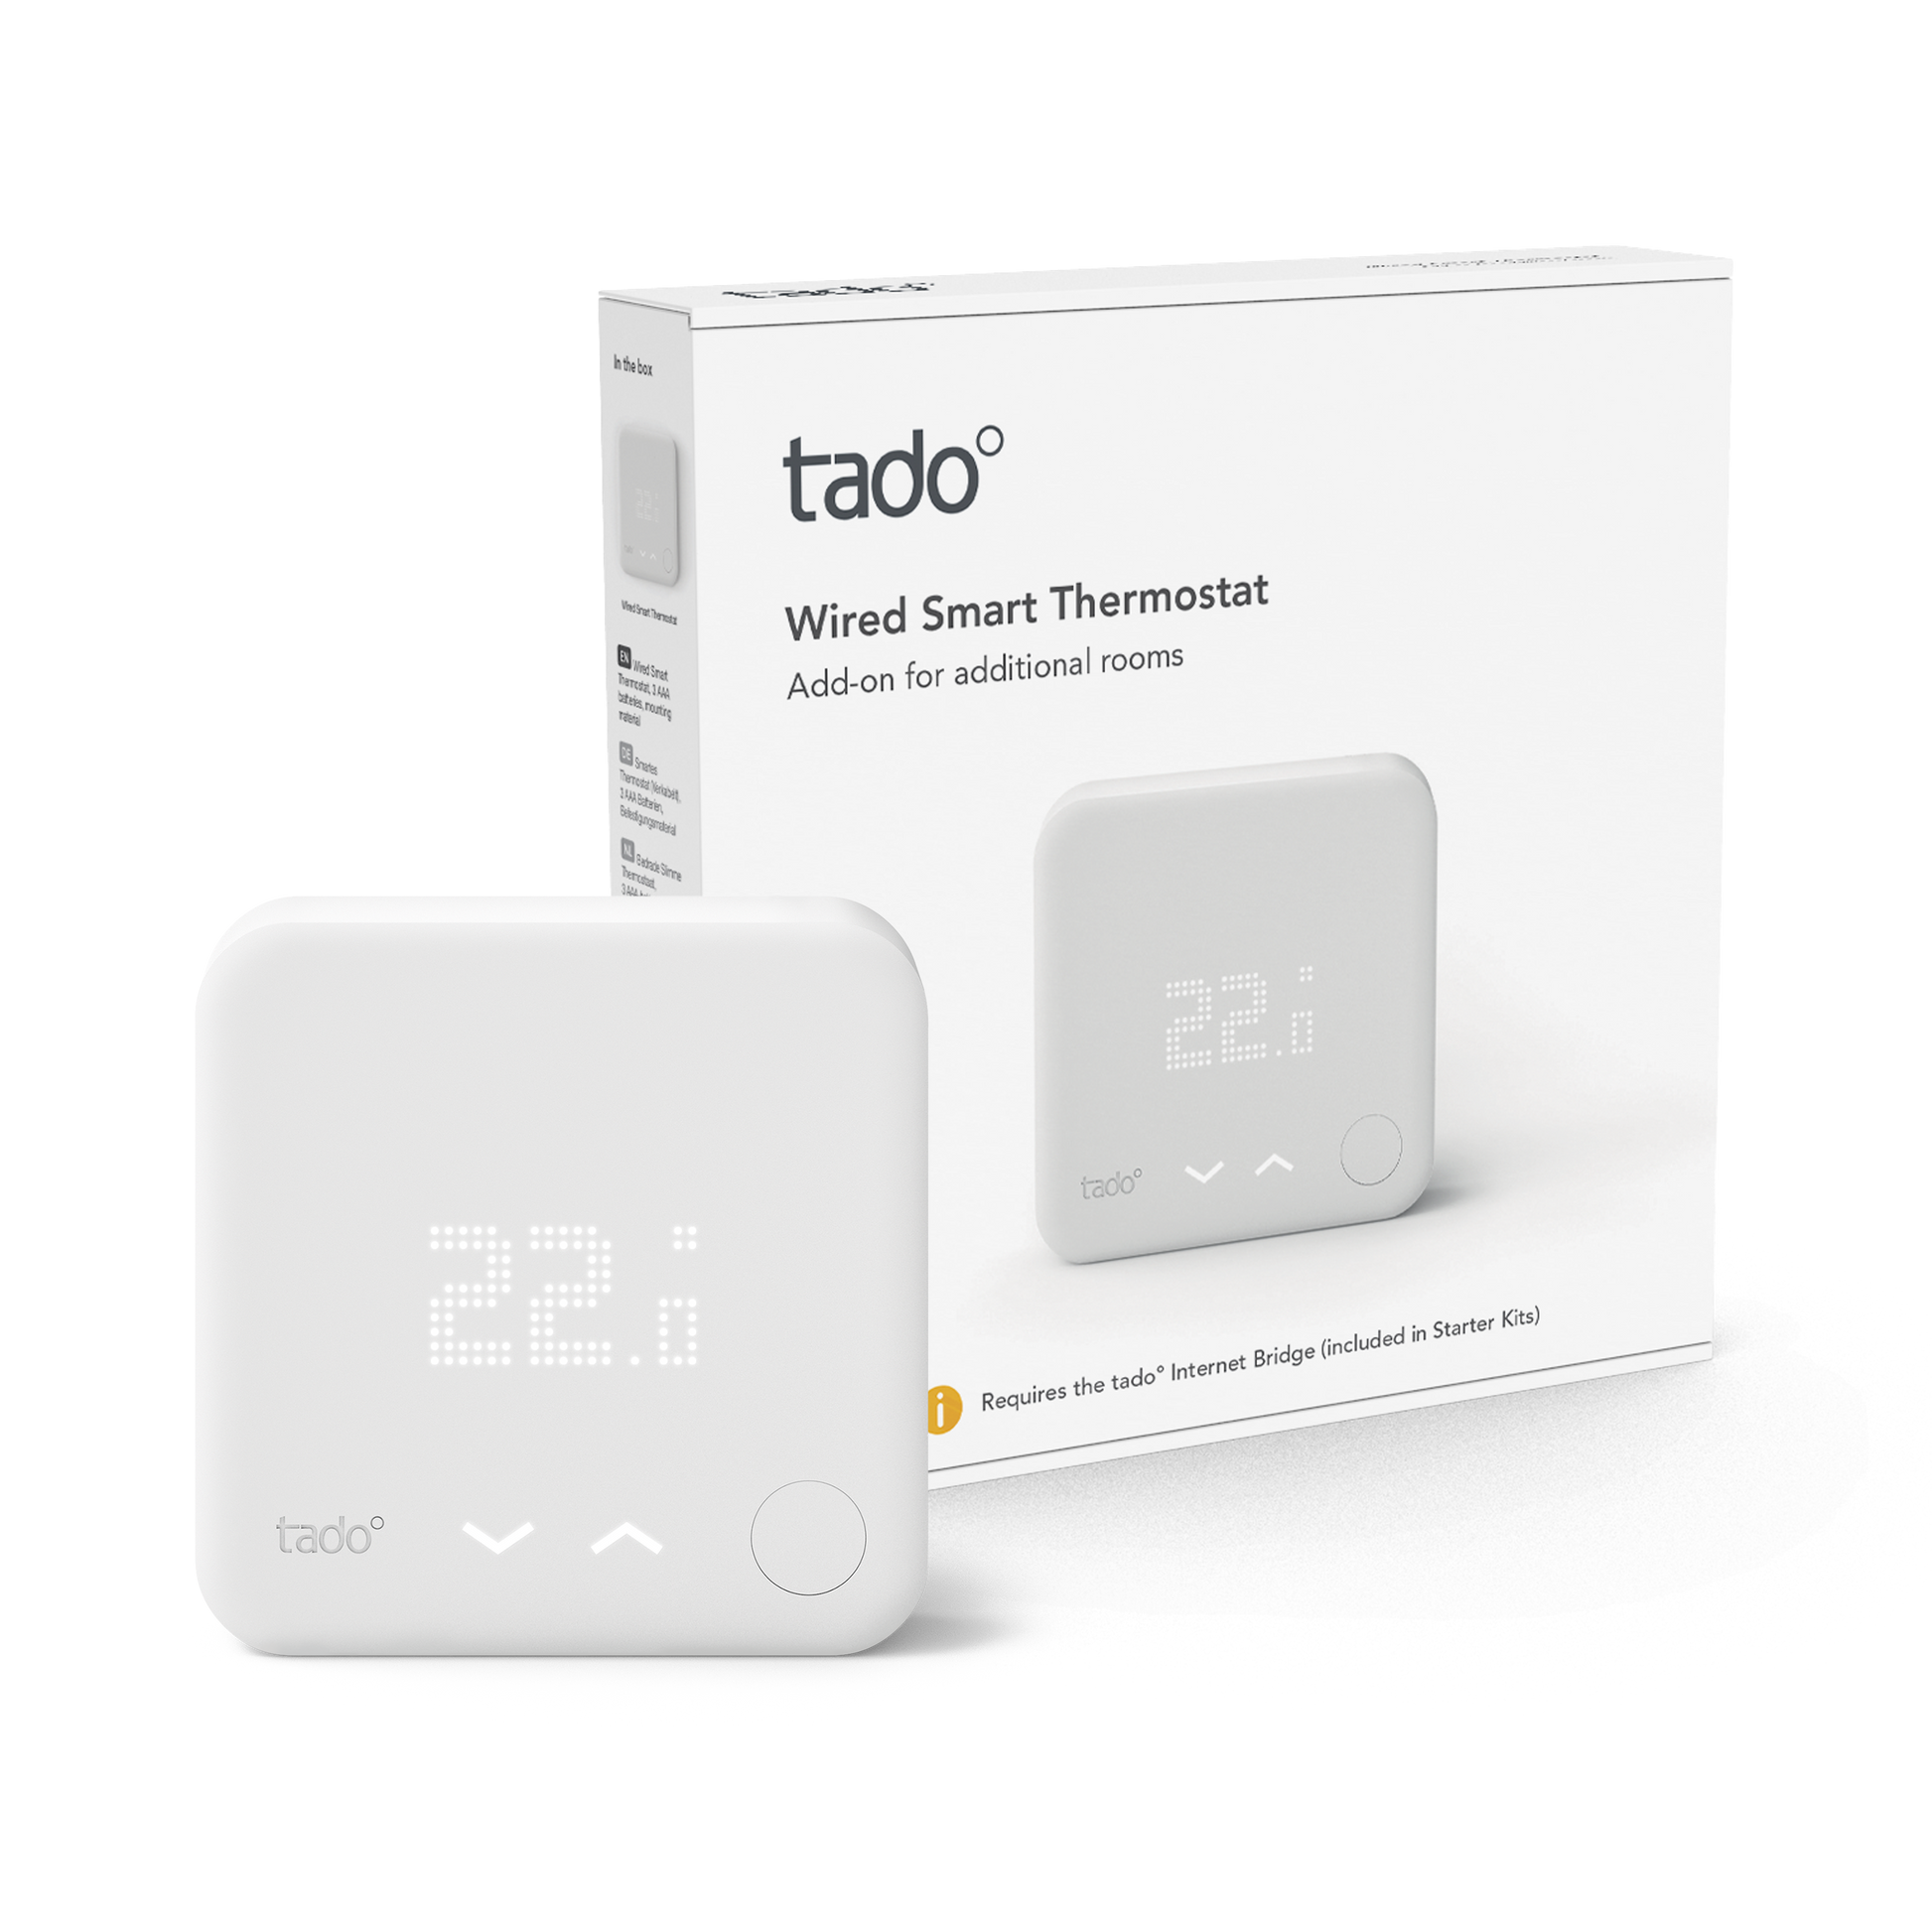 Nuevo termostato inteligente Tado disponible en España